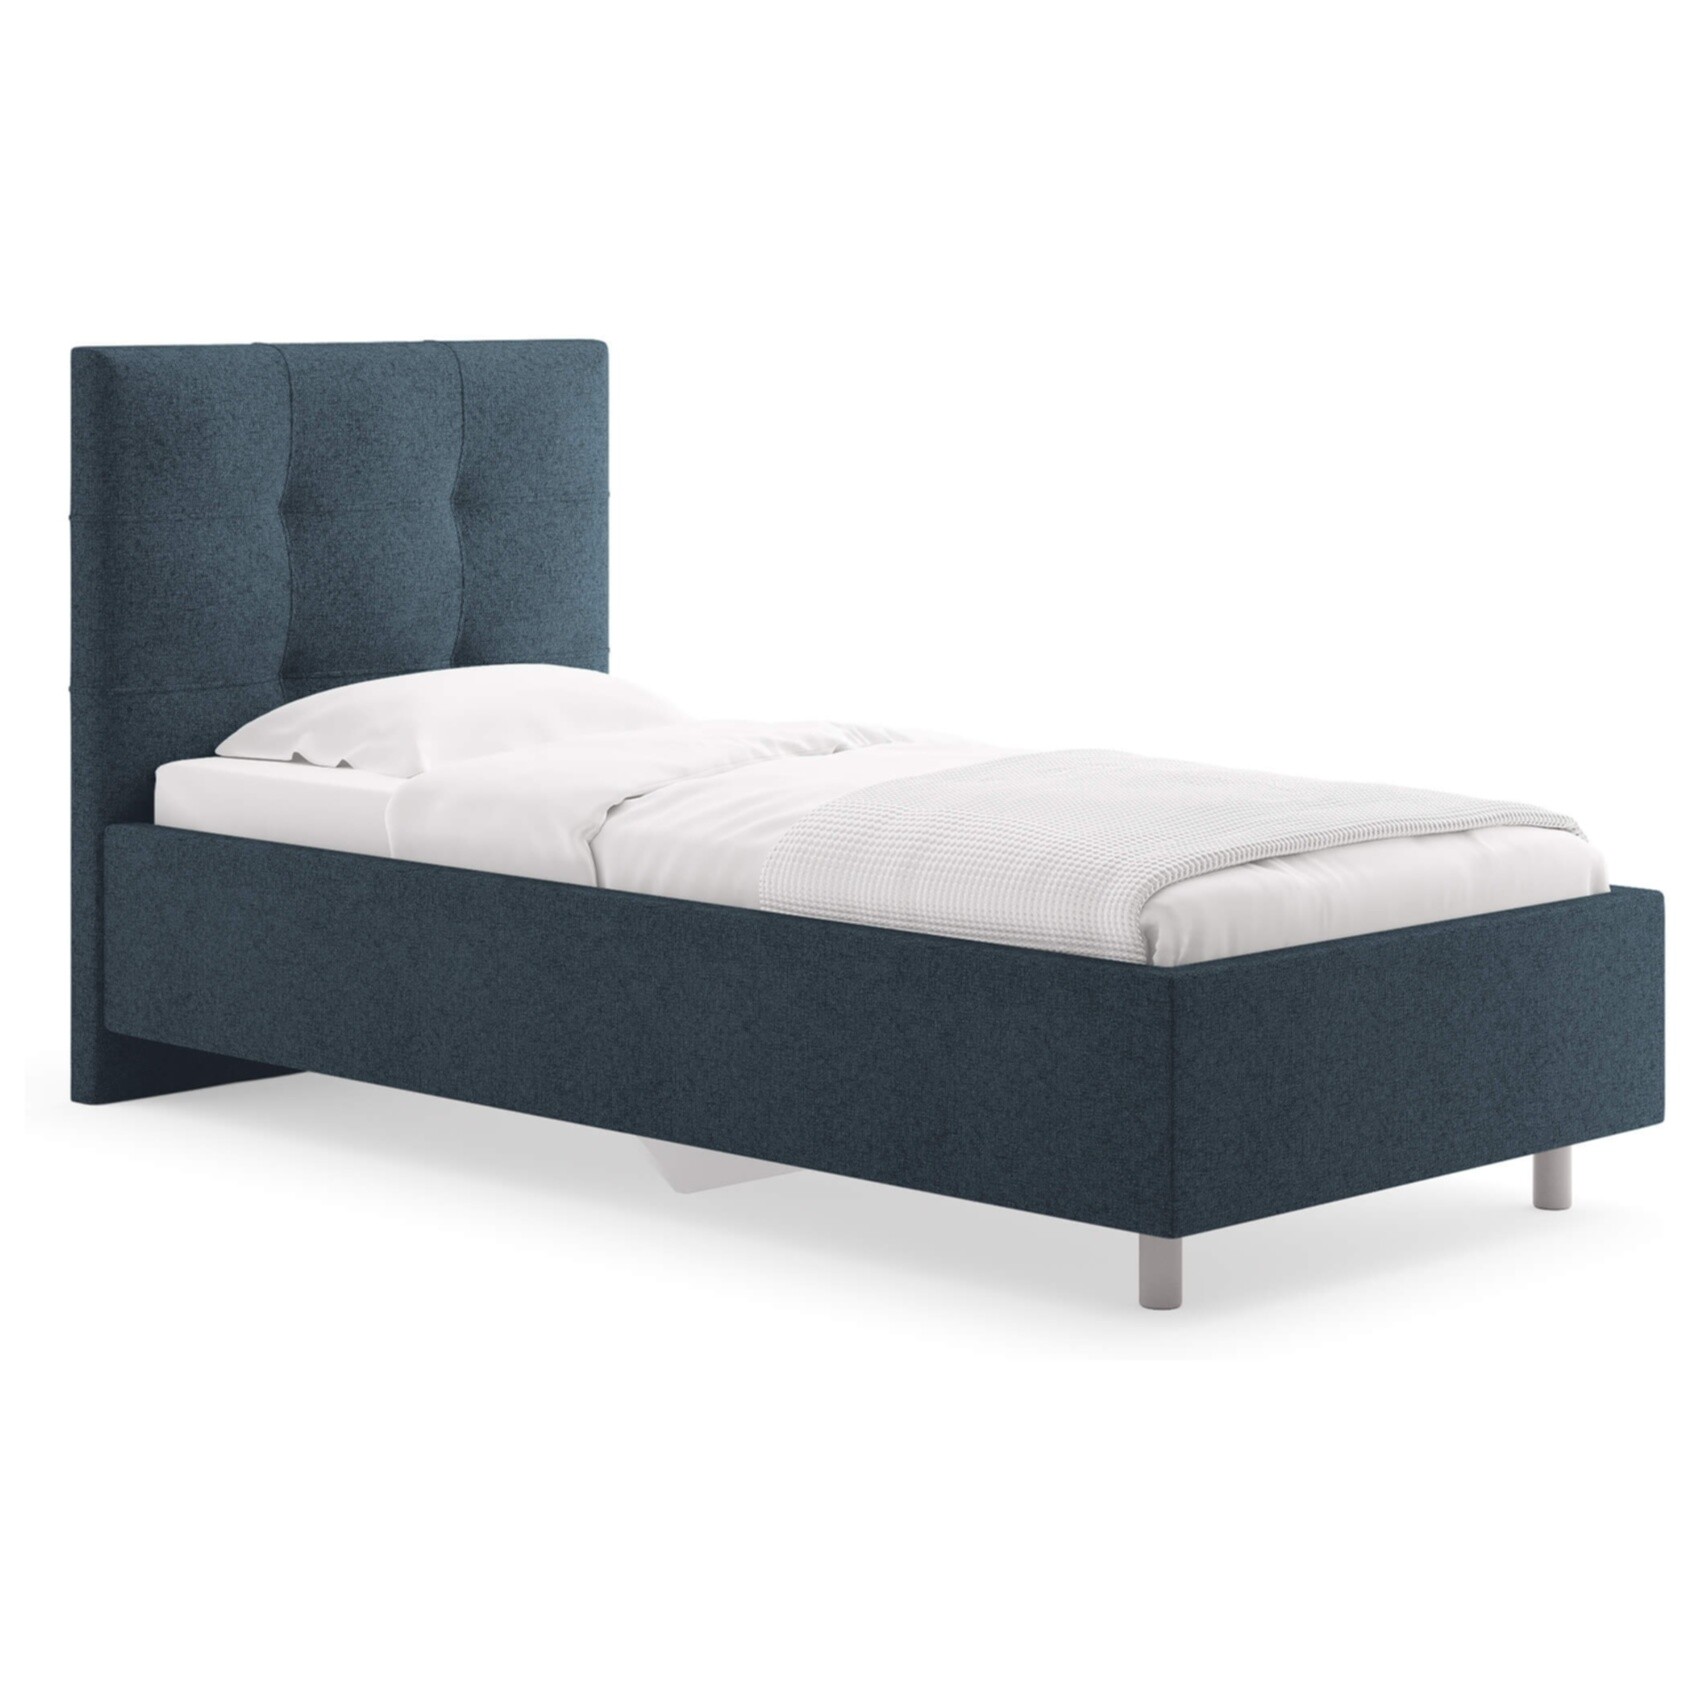 Кровать с мягким изголовьем односпальная 90х190 см кашемир синяя Caprice